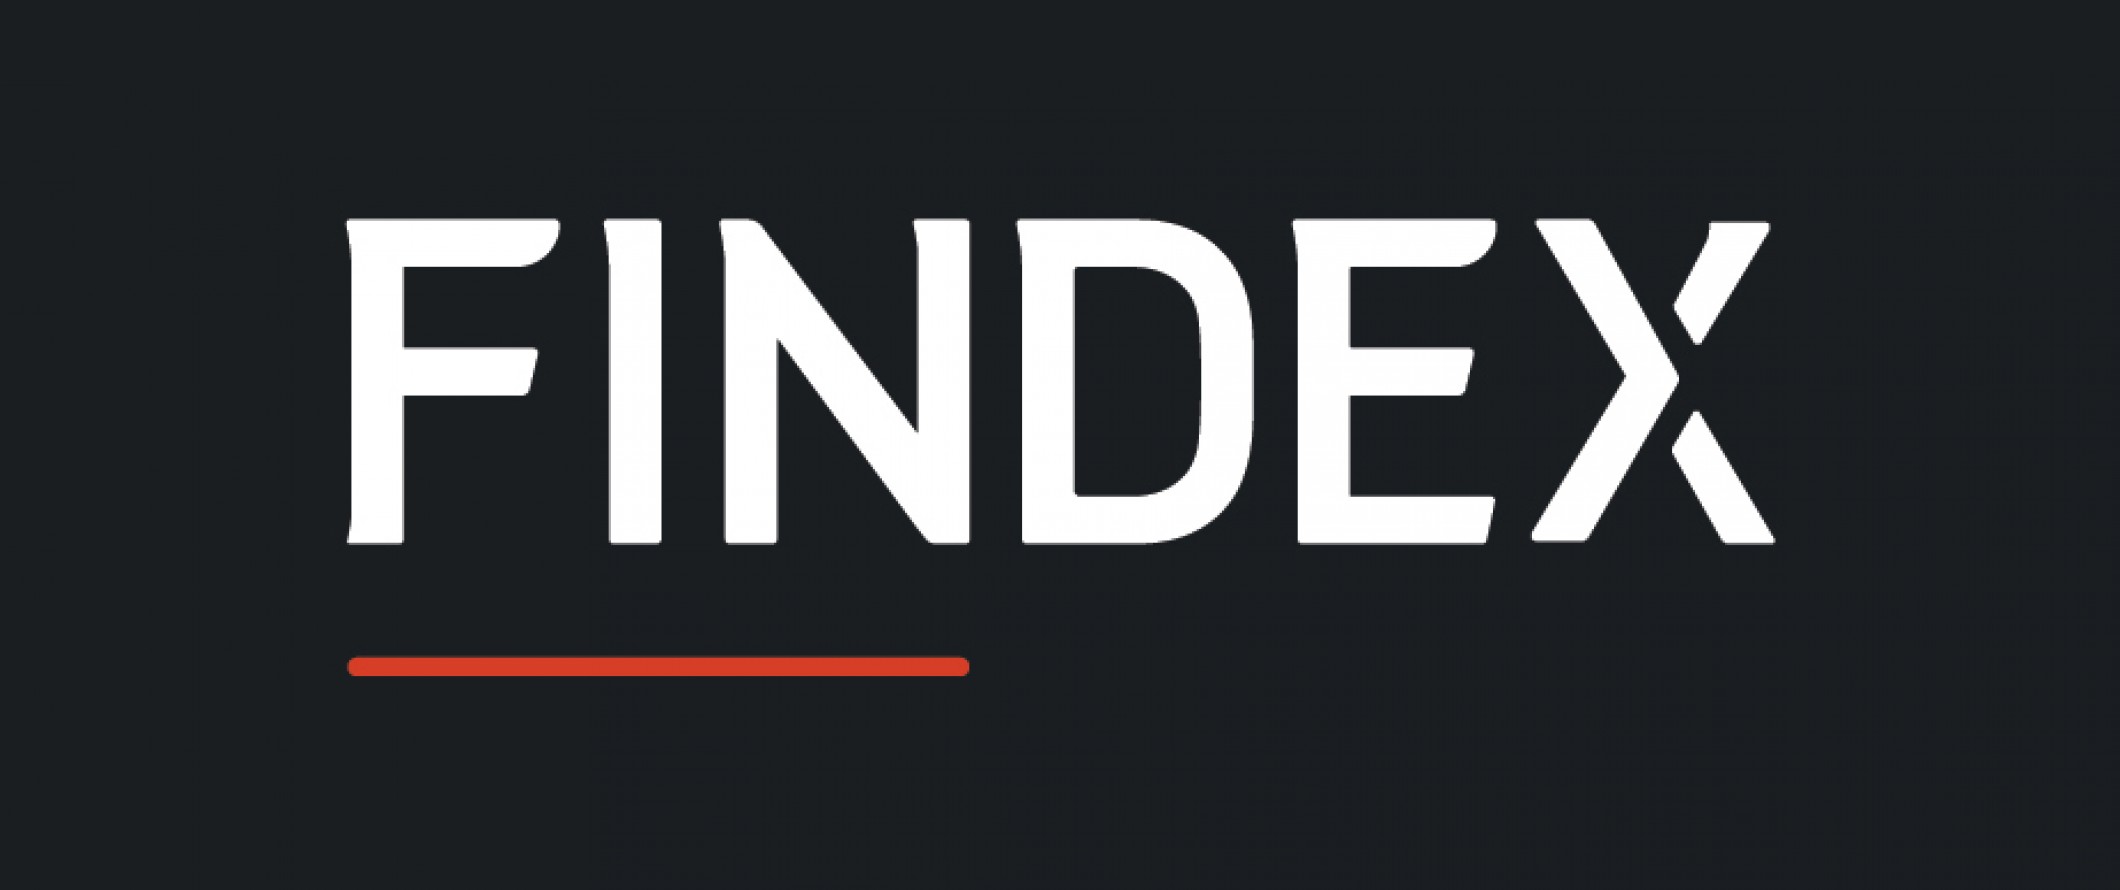 Findex Banner